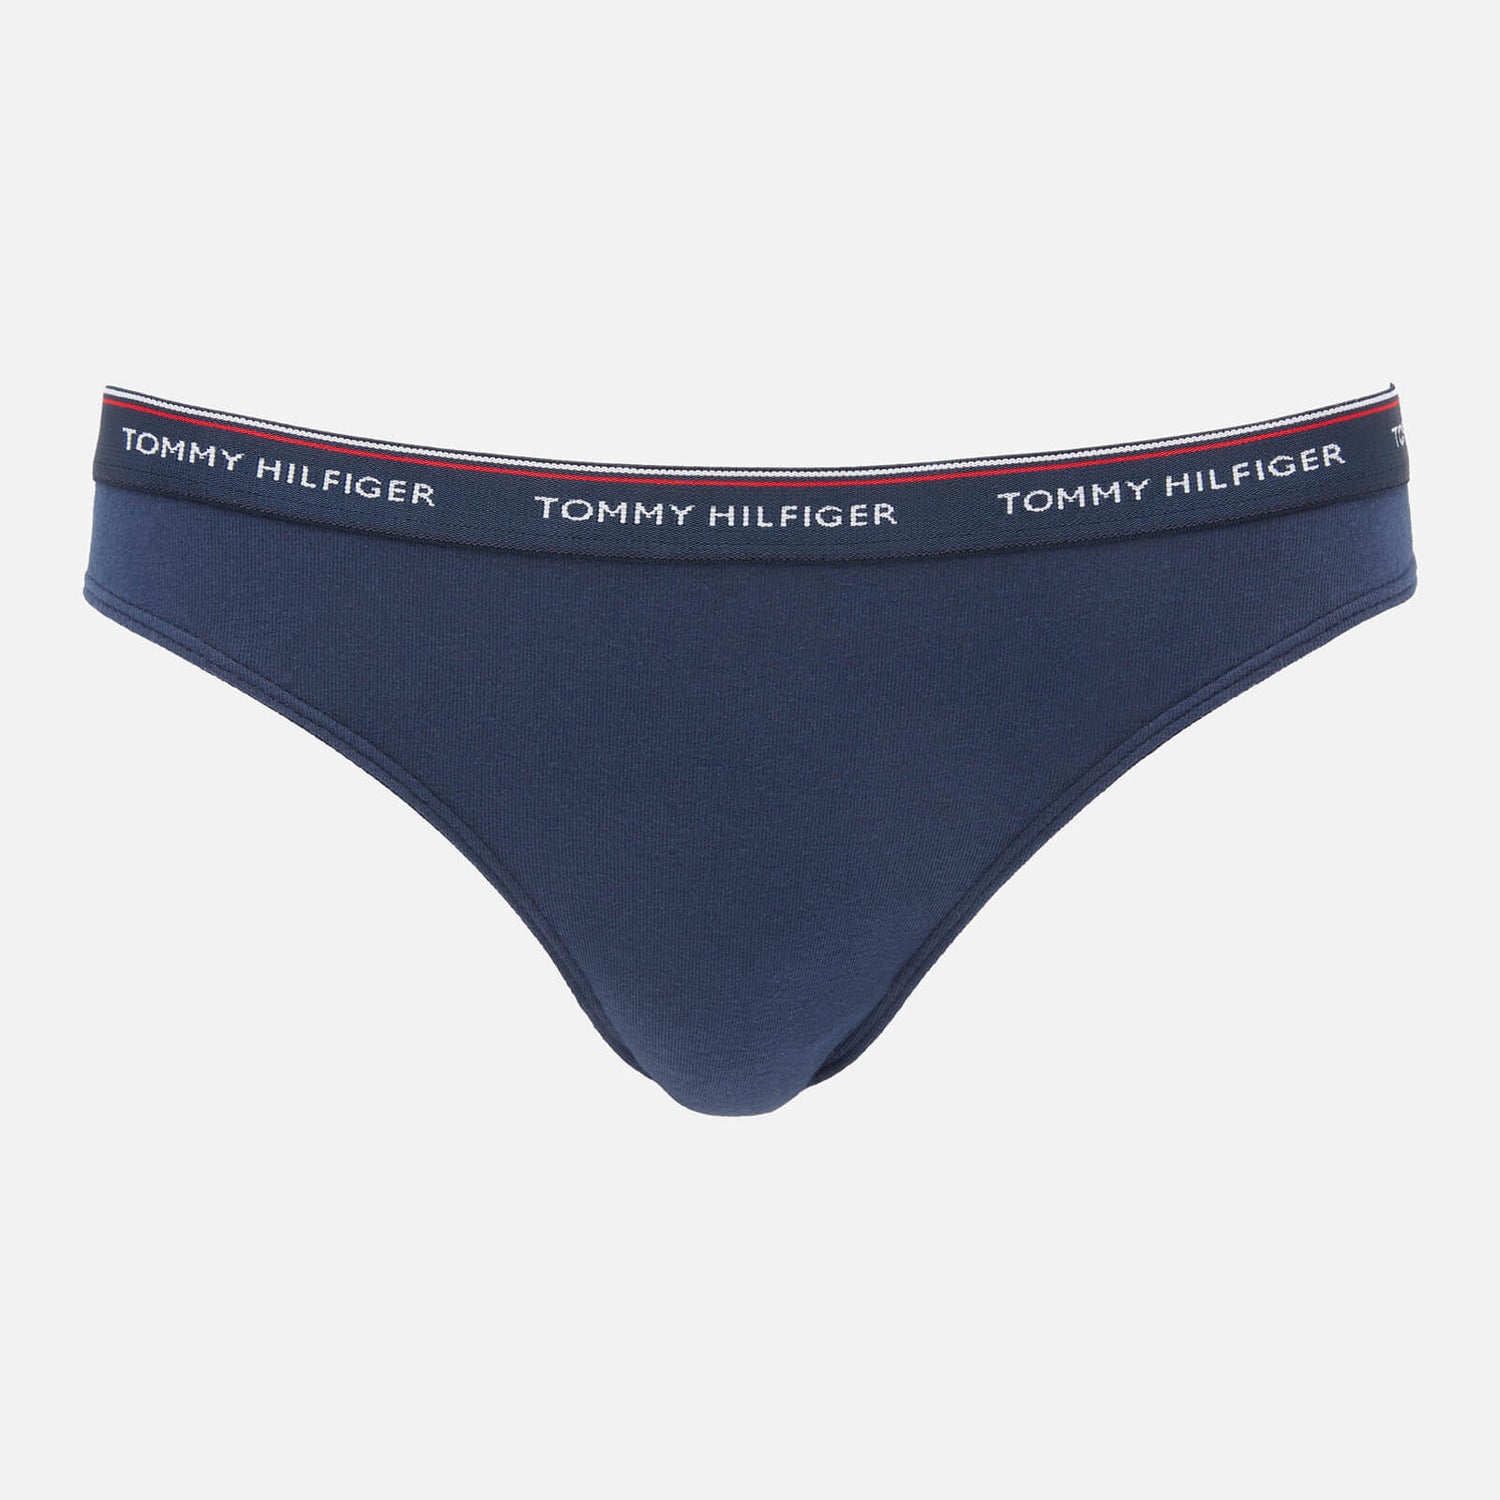 Tommy Hilfiger Women's 3 Pack Essentials Briefs - Navy Blazer - XS